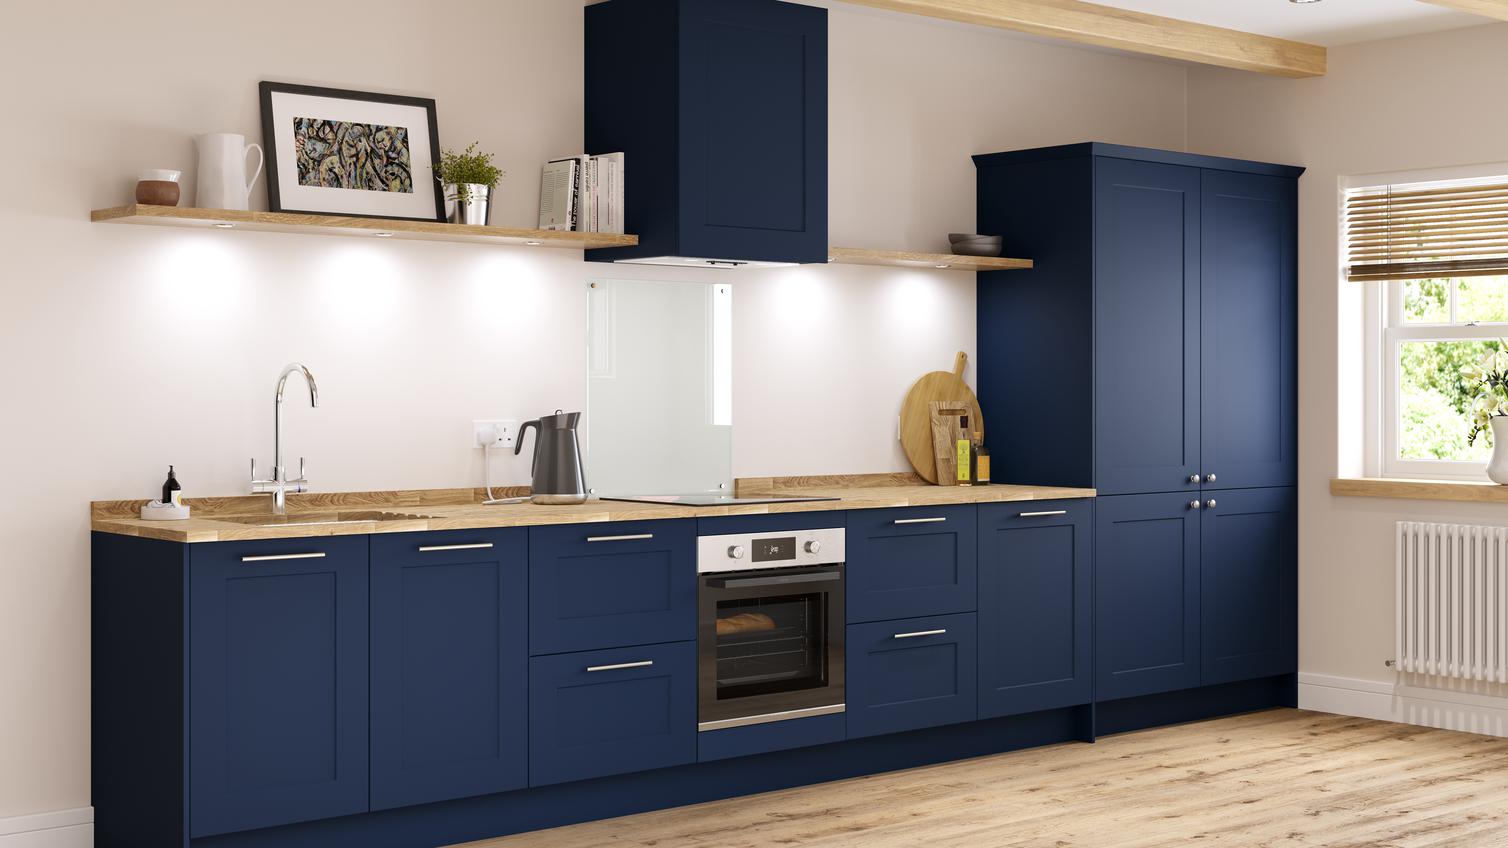 Navy blue shaker kitchen in galley layout with larder units, wooden worktop and undermount ceramic belfast sink